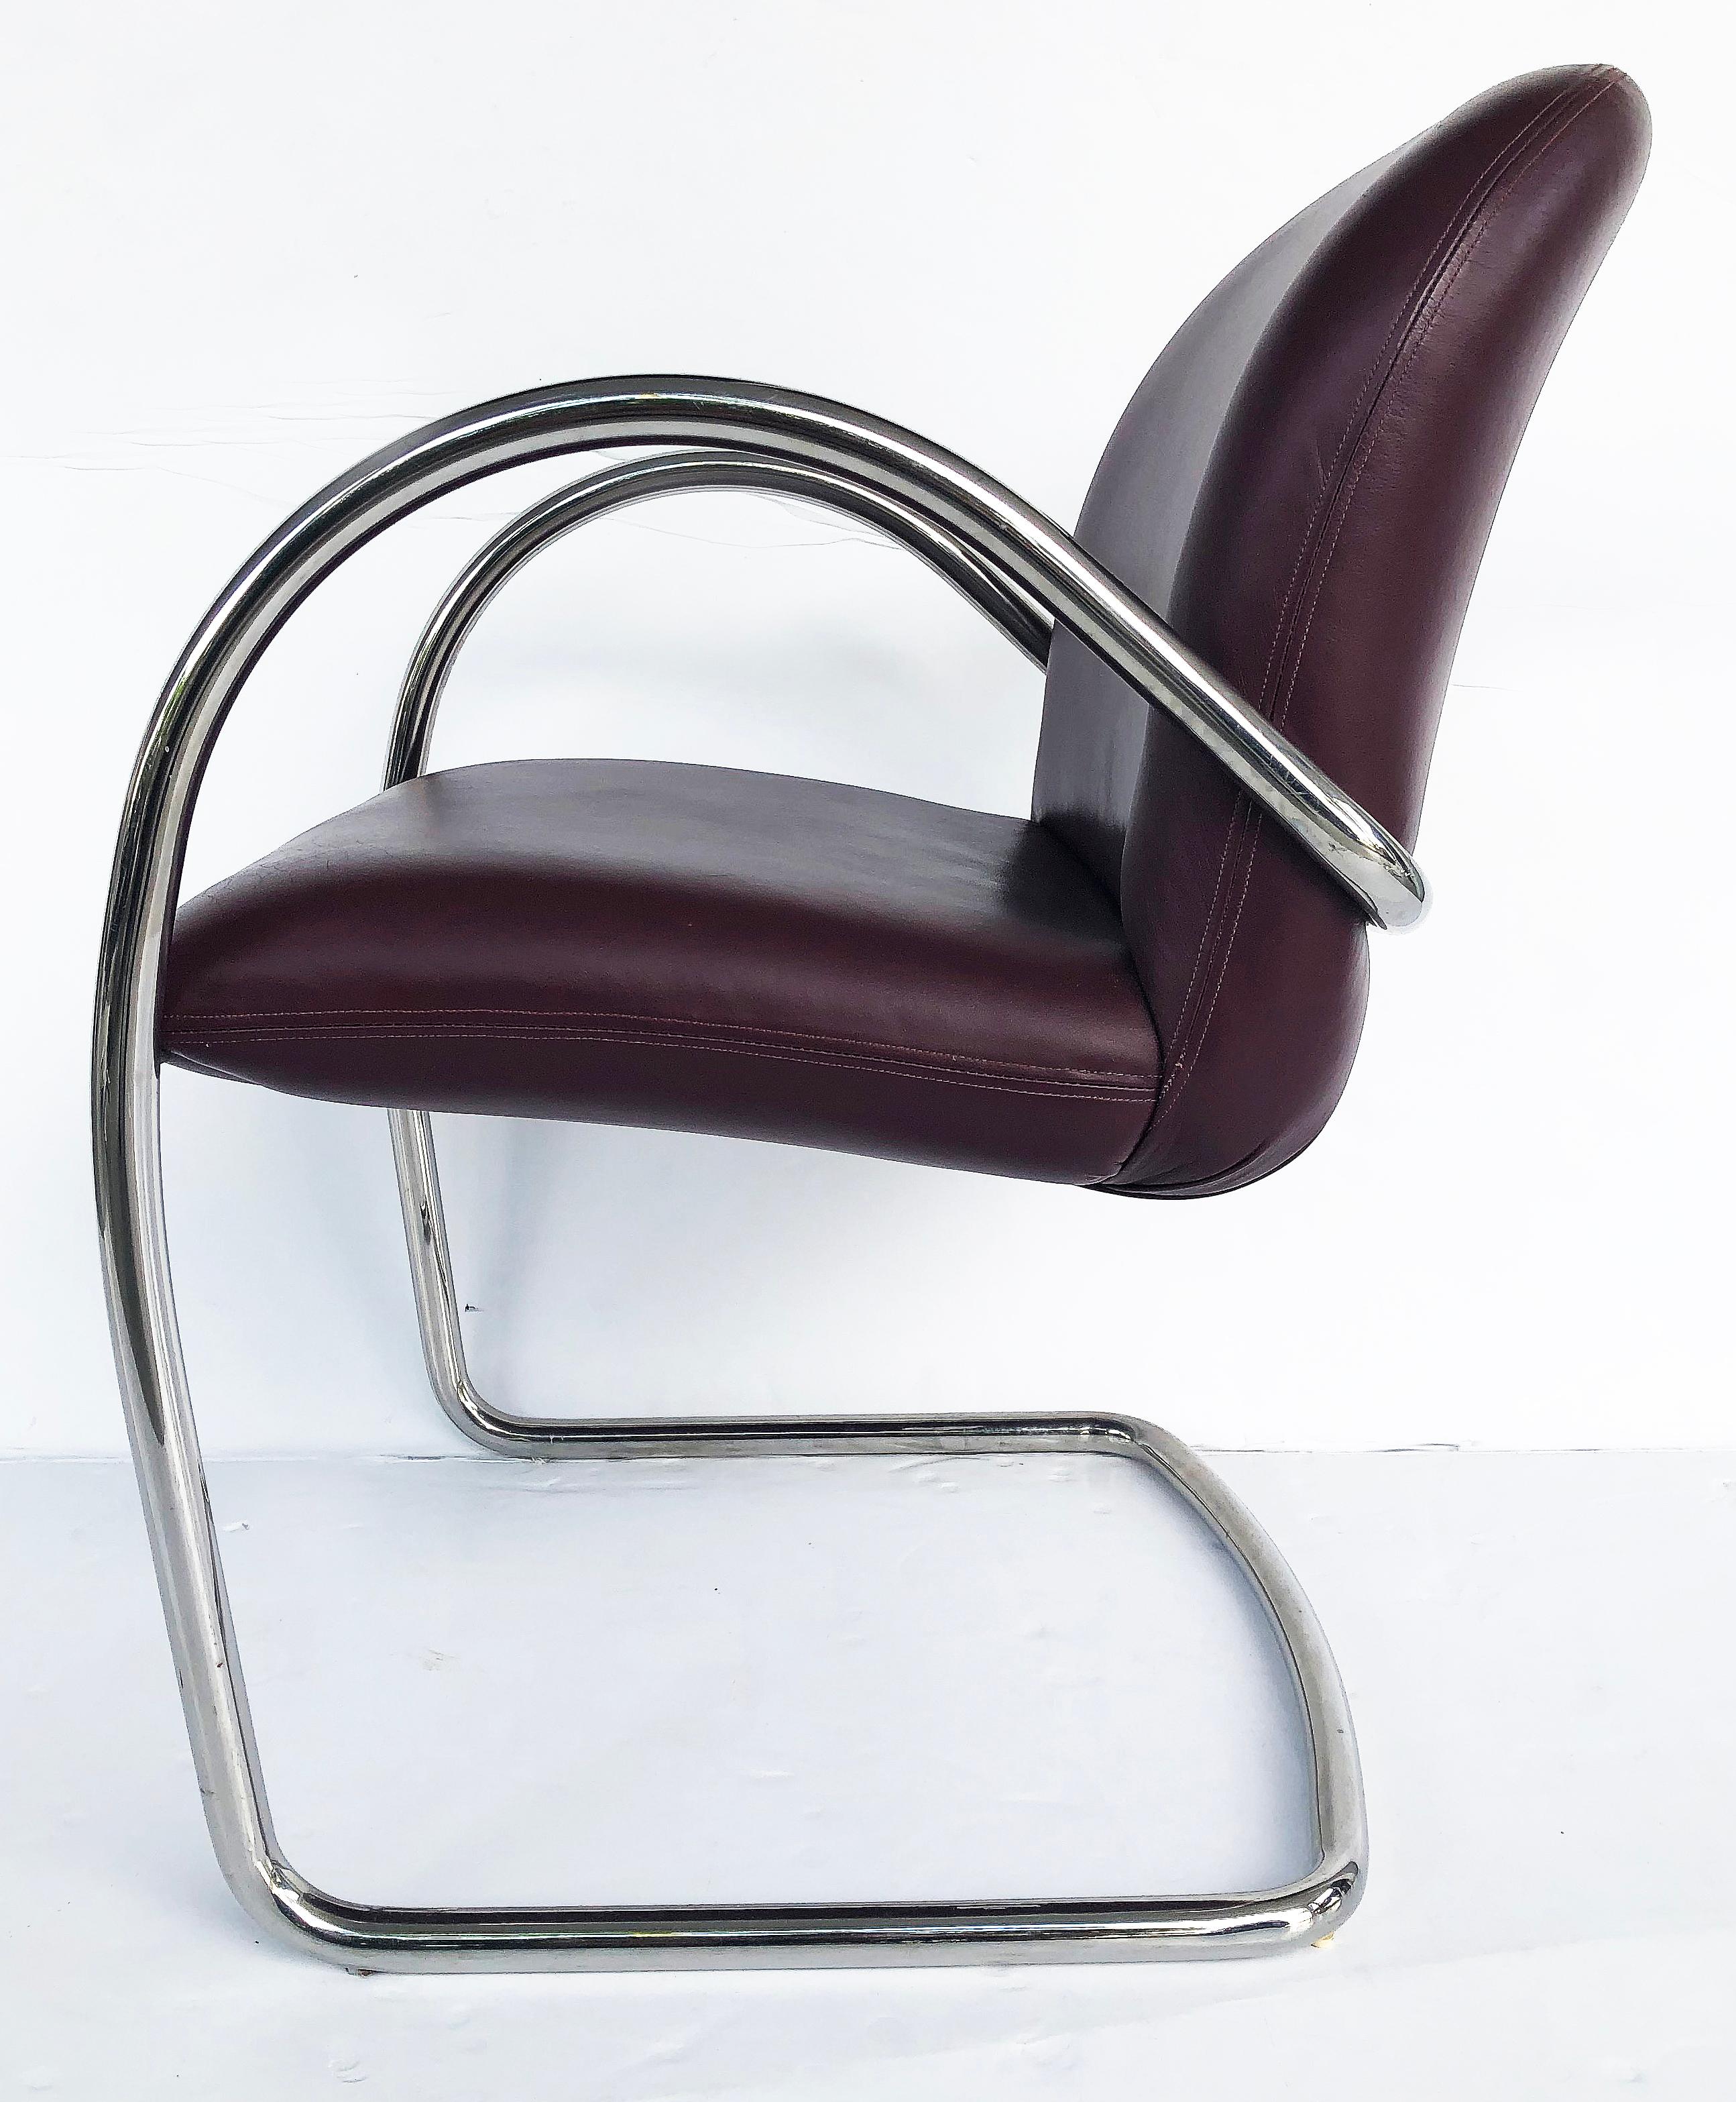 Chaises cantilever en cuir et inox Brueton, lot de 8 

Nous proposons à la vente un ensemble de huit (8) chaises cantilever Brueton avec des cadres tubulaires en acier inoxydable et un revêtement en cuir bordeaux. Les chaises sont munies